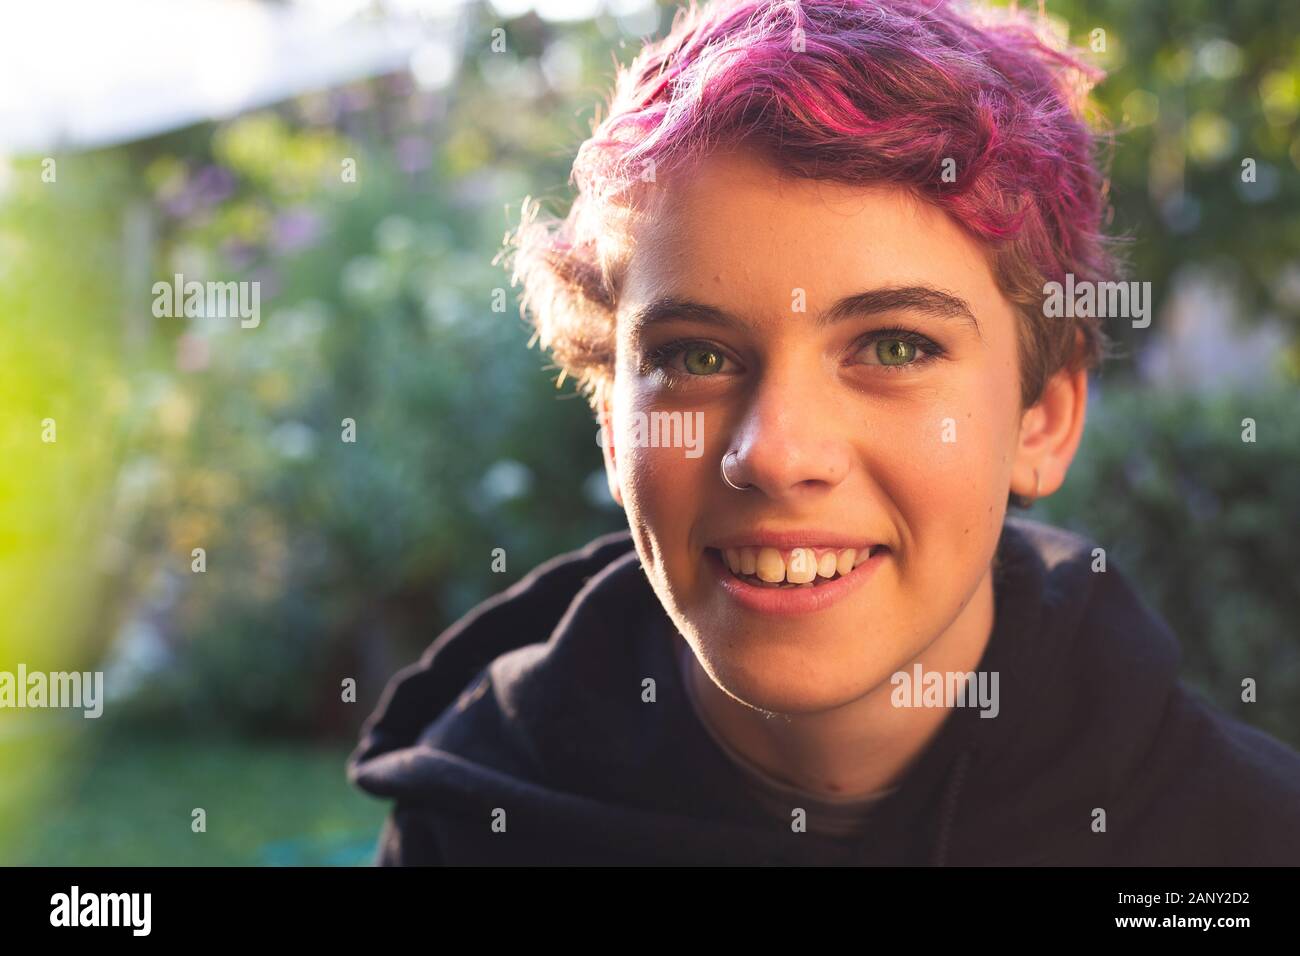 Retrato de una adolescente feliz y sonriente, con pelo corto en vibrantes y naturales al aire libre Foto de stock